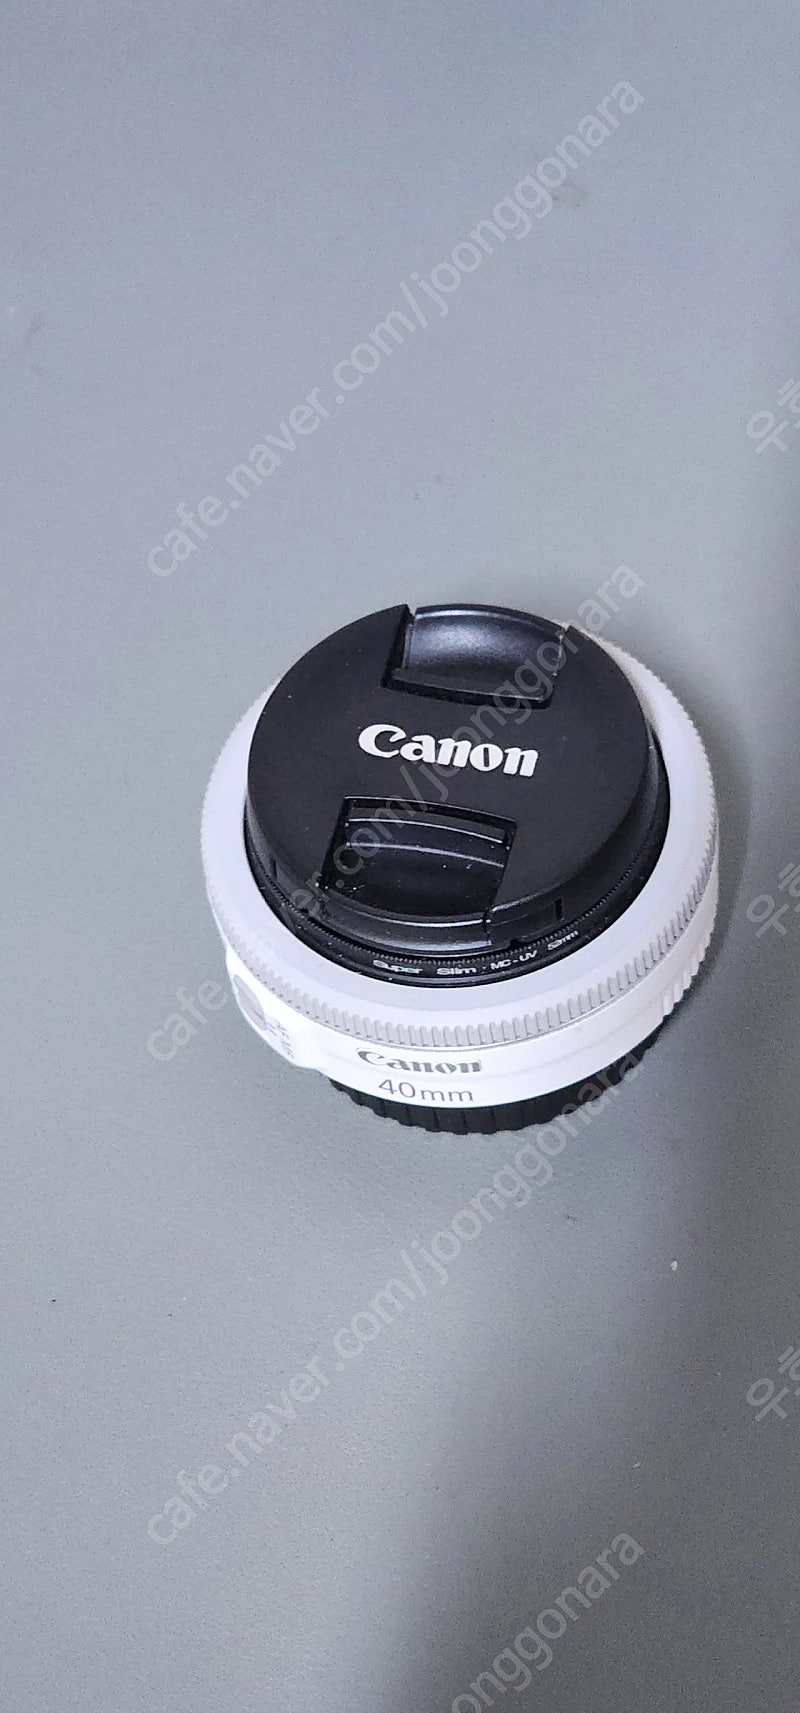 캐논 EF40mm f2.8stm 팬케이크 렌즈